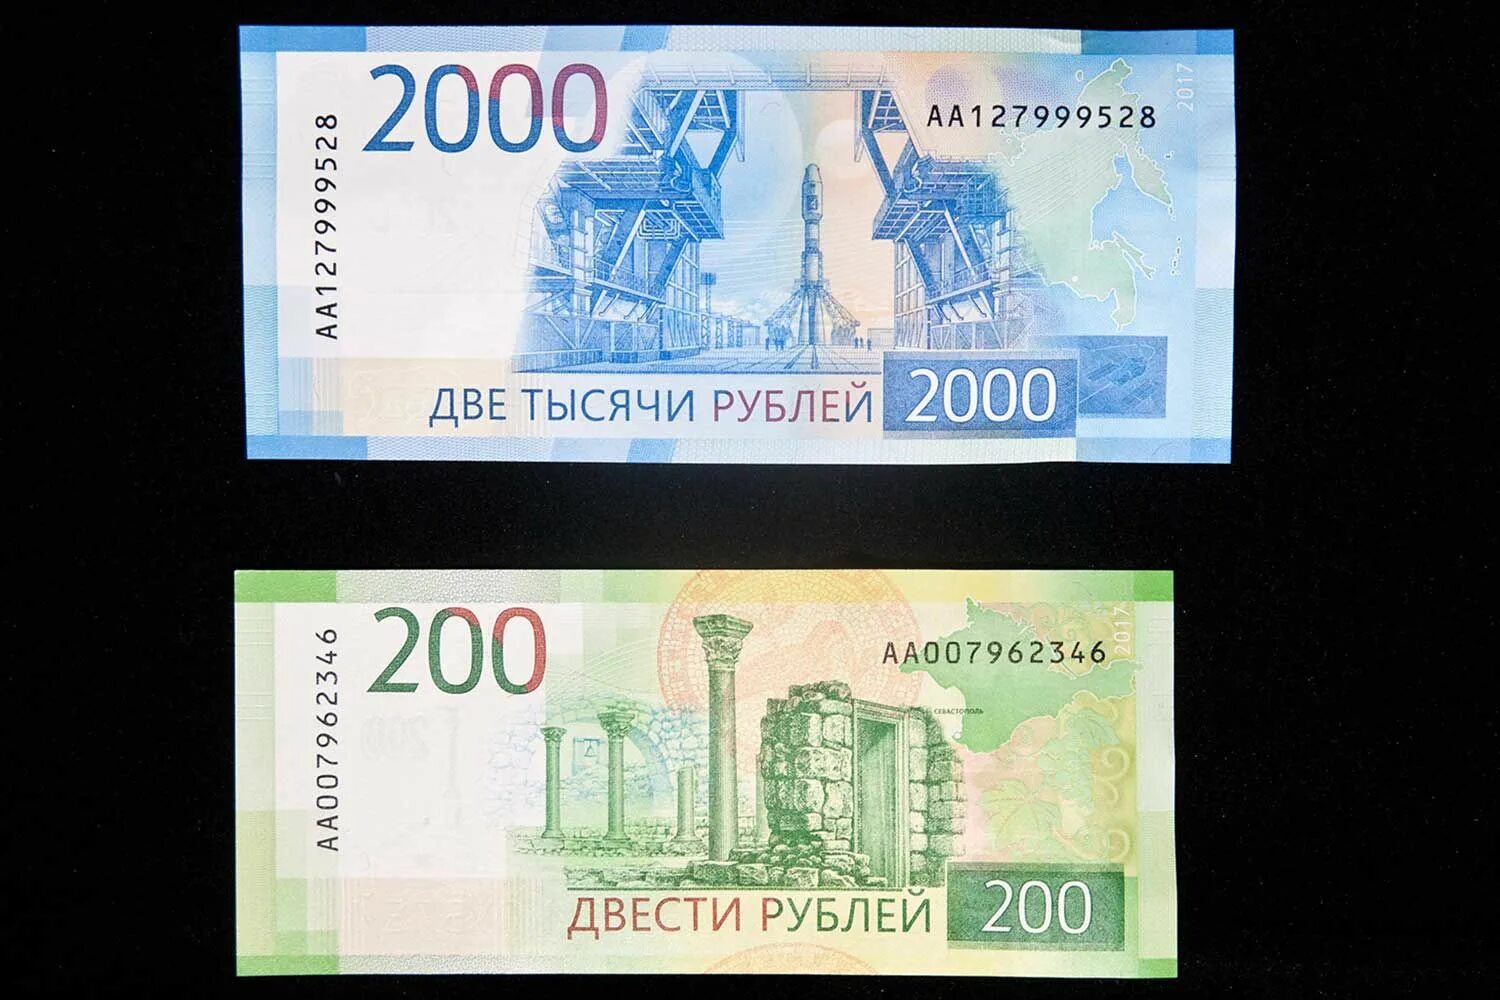 Купюры номиналом 2000 и 200. 200 Рублей банкнота синяя. Банкнота 200 и 2000 рублей. Банкноты номиналом 200 и 2000 рублей.